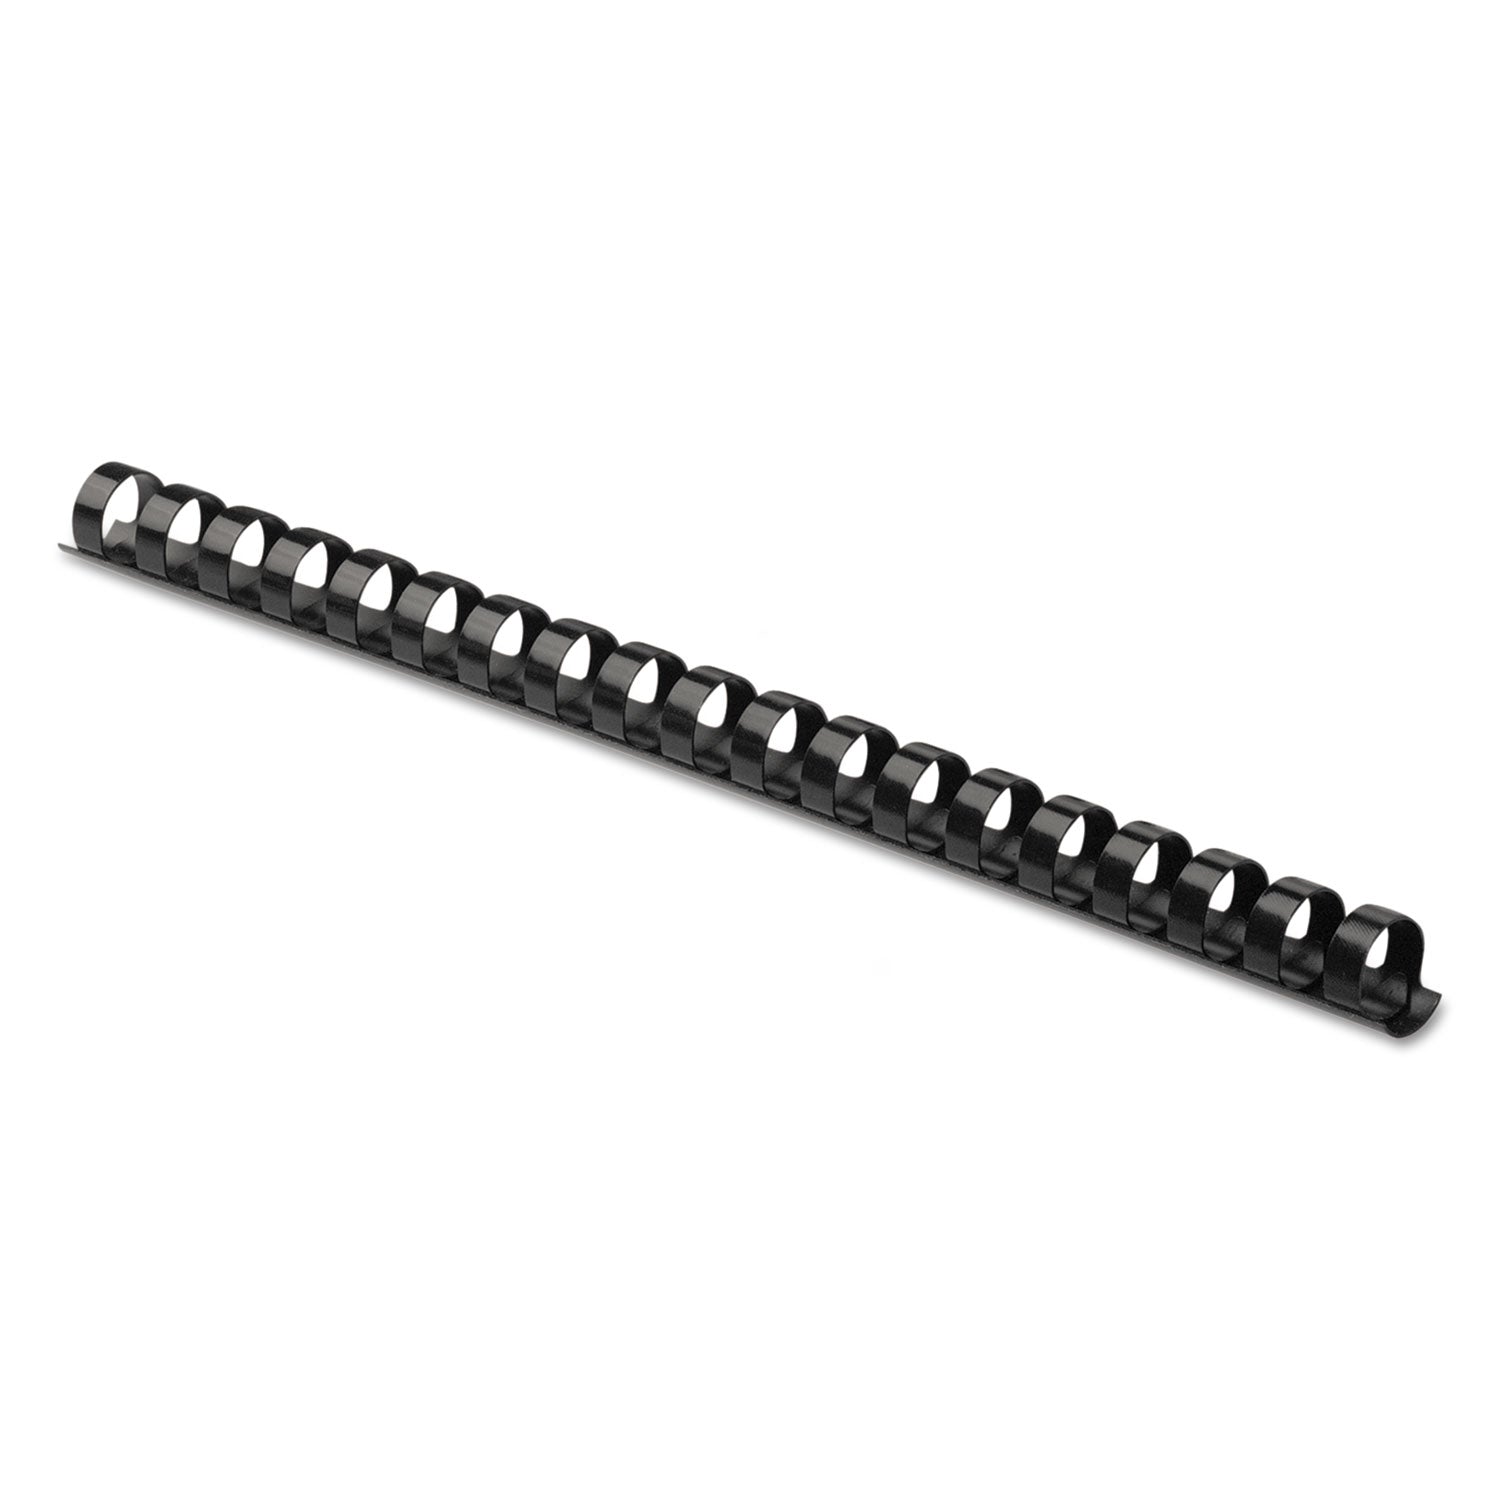 Plastic Comb Bindings, 3/8" Diameter, 55 Sheet Capacity, Black, 25/Pack - 